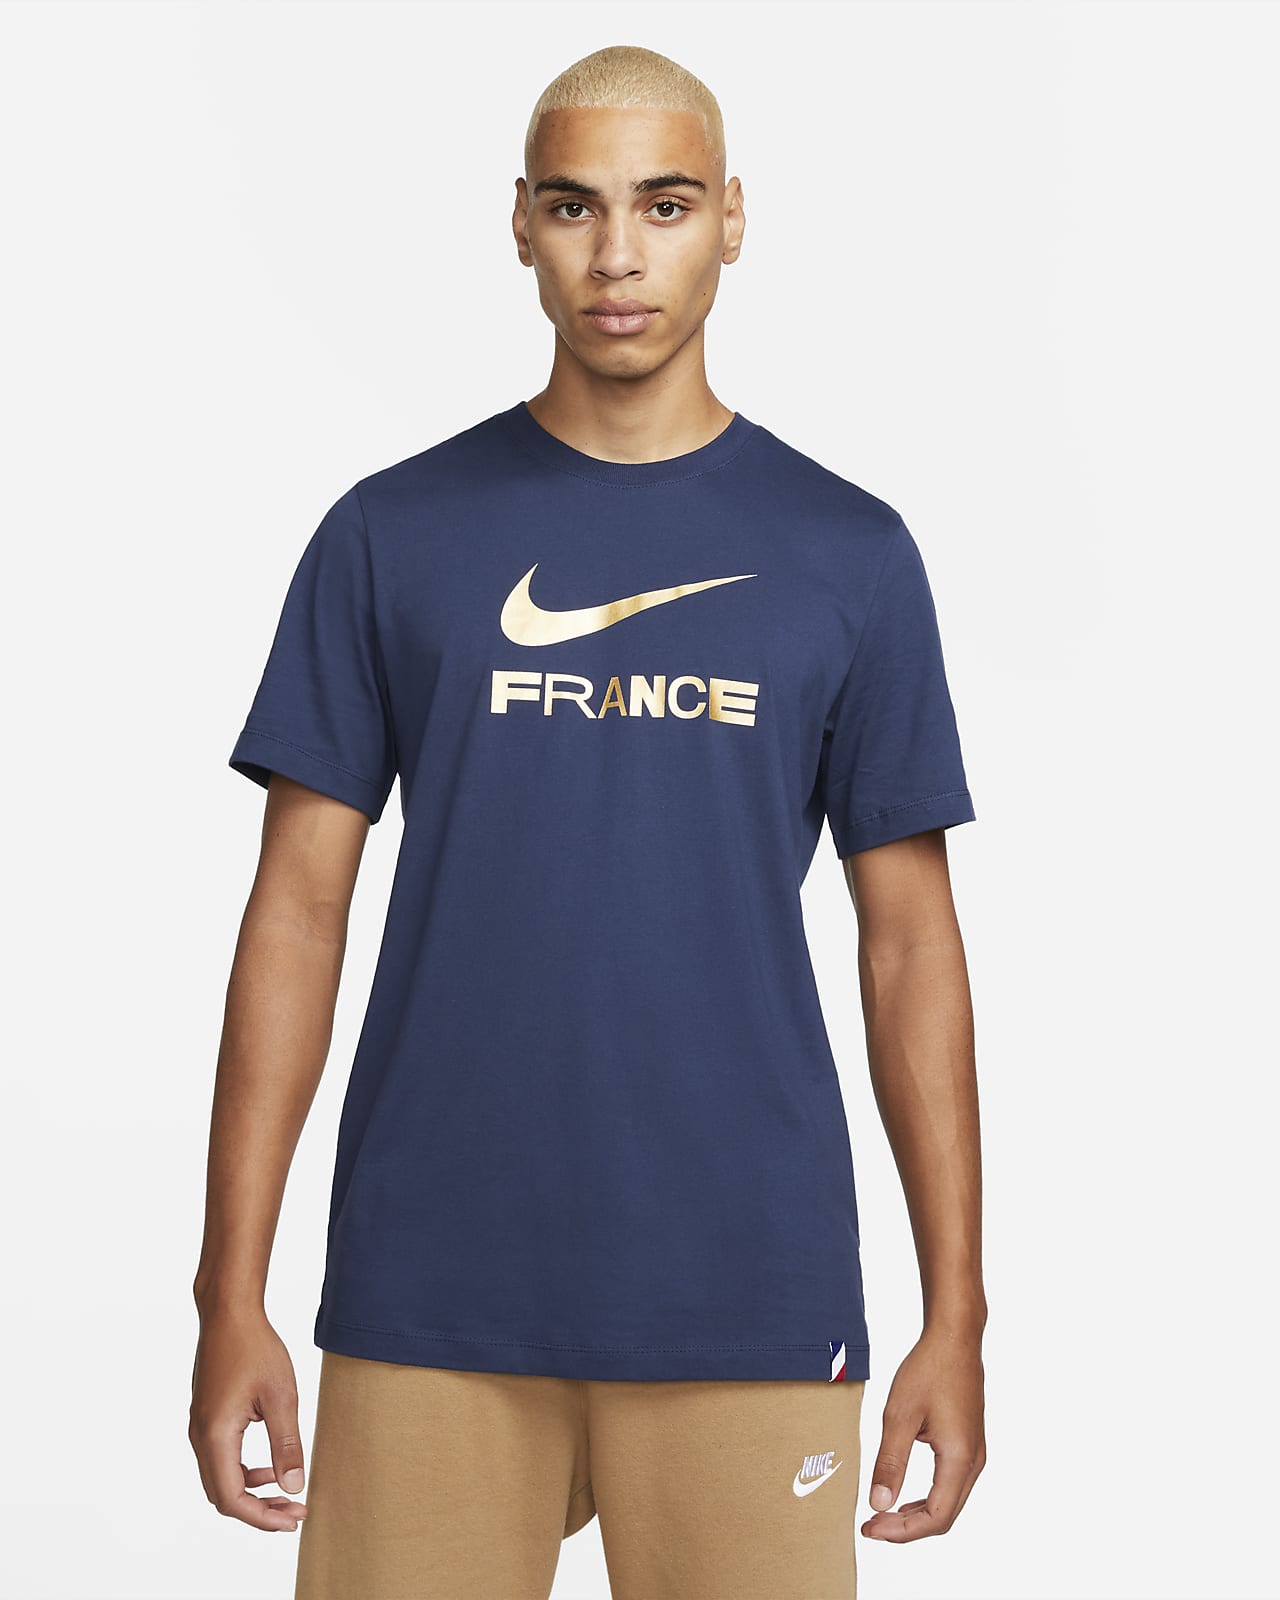 Prehistórico represa pereza Playera Nike para hombre Swoosh Francia. Nike.com